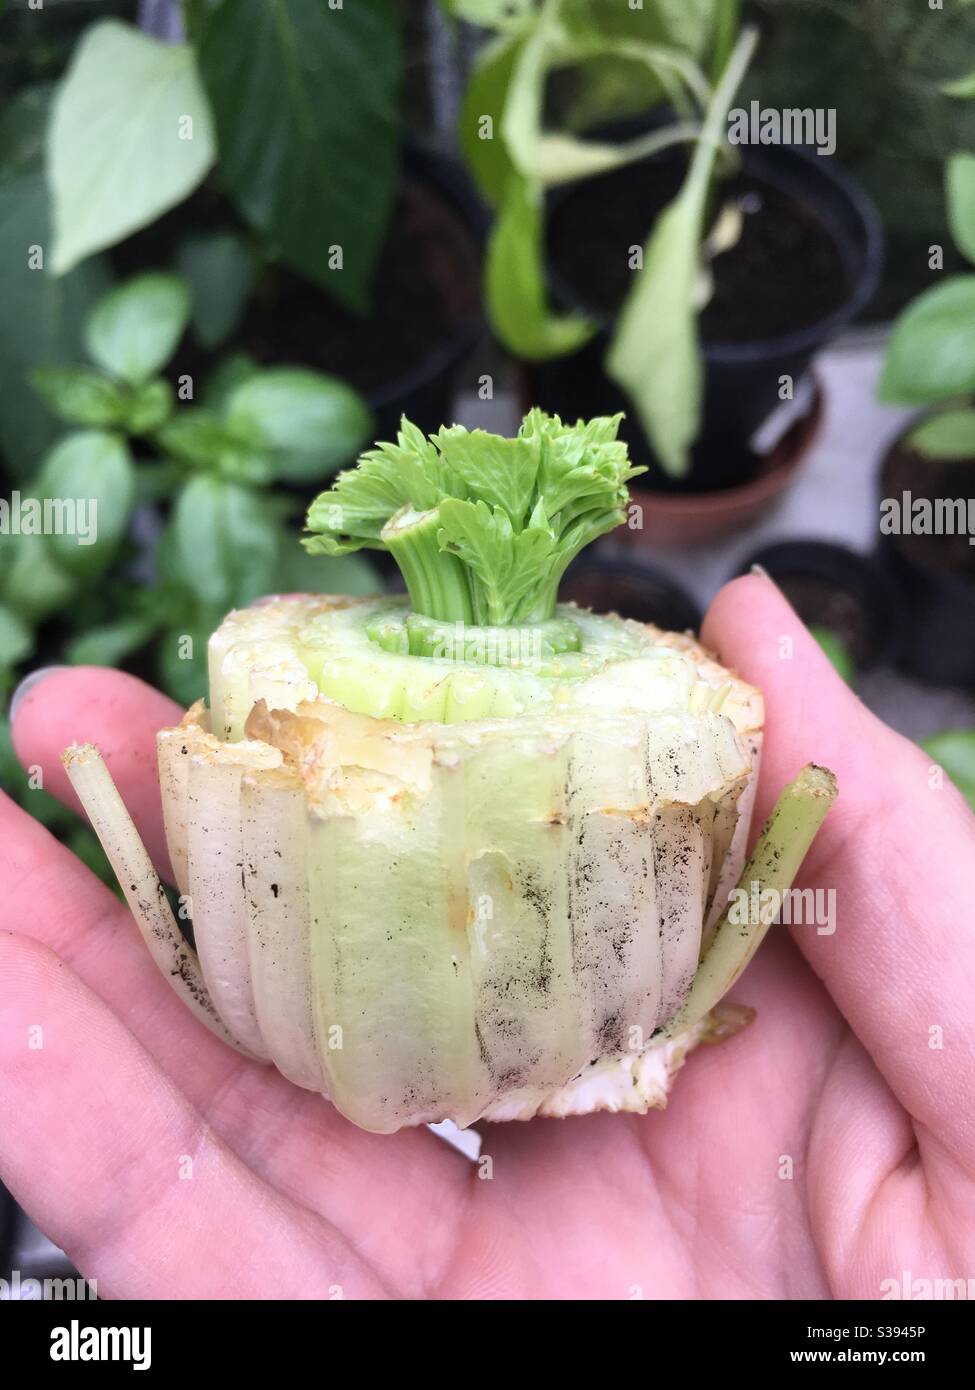 Regrowing celery from scraps Stock Photo